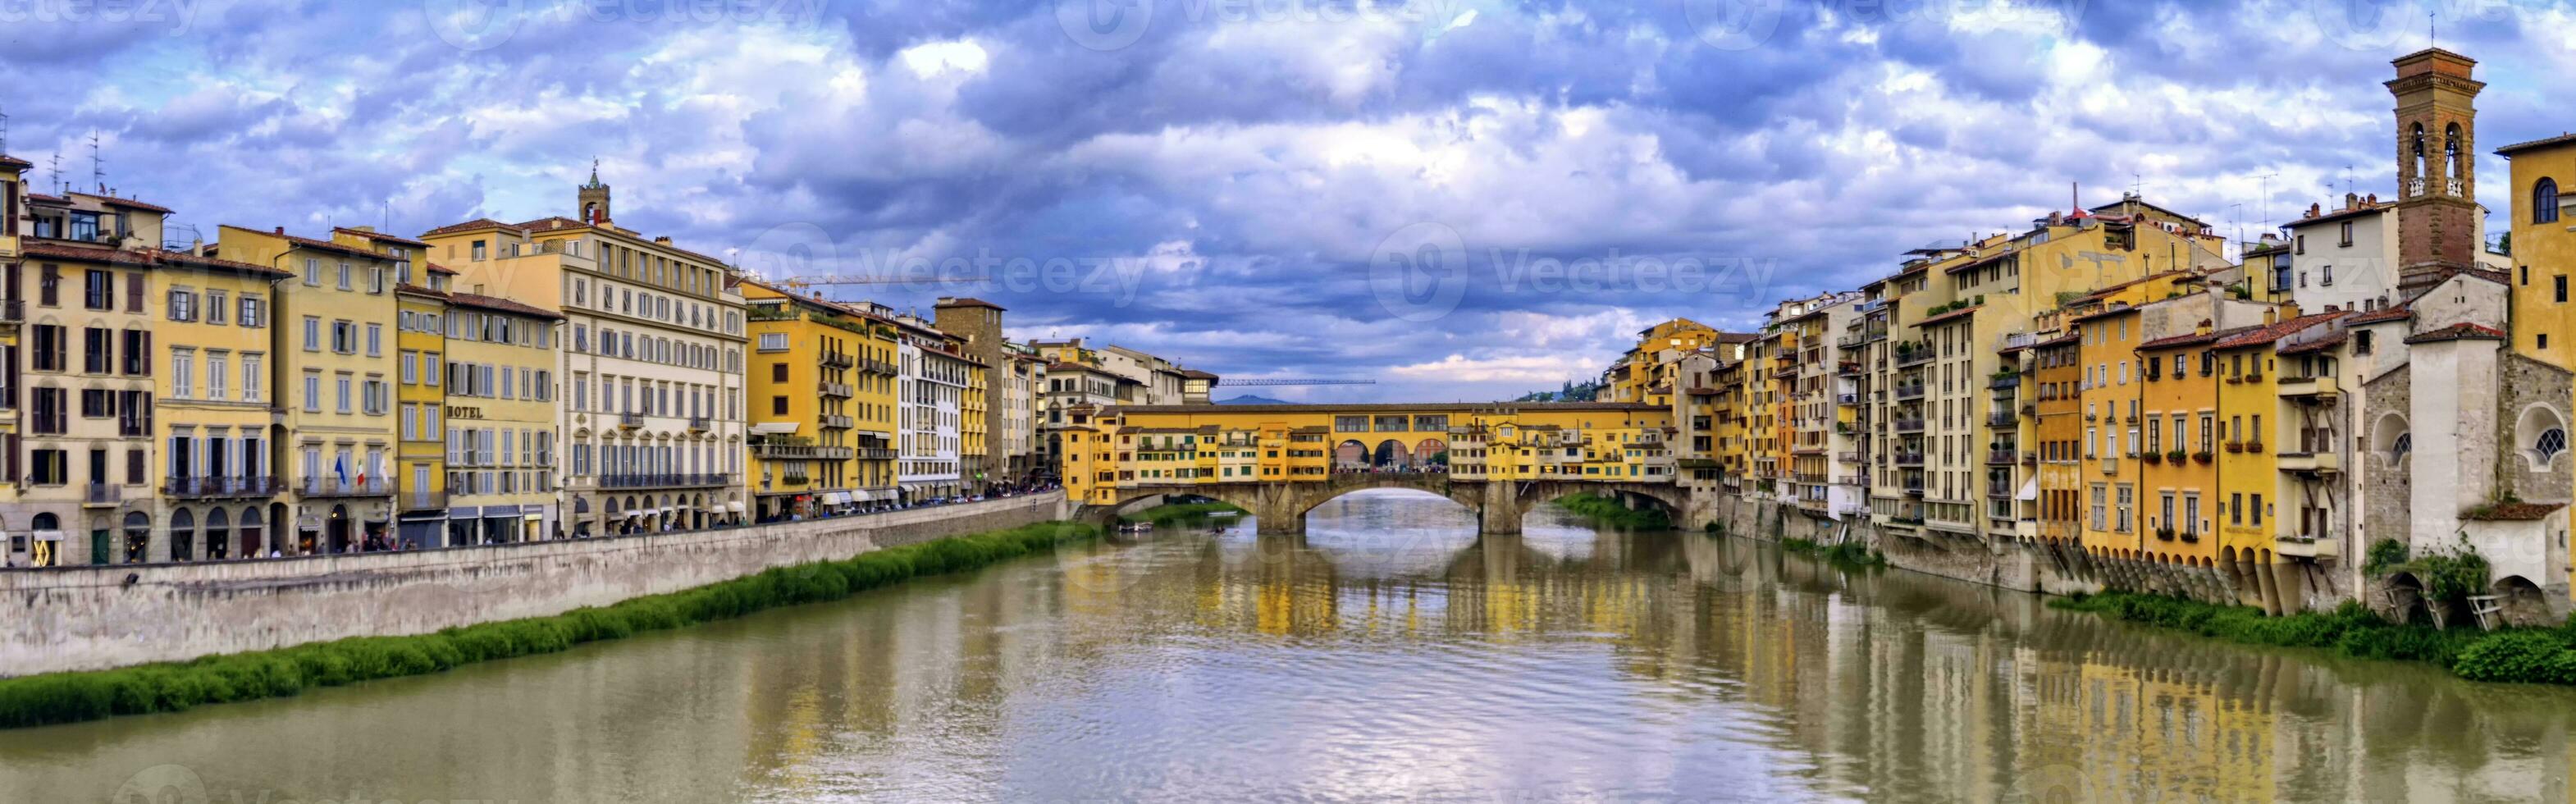 ponte viejo, florencia, Florencia, italia foto